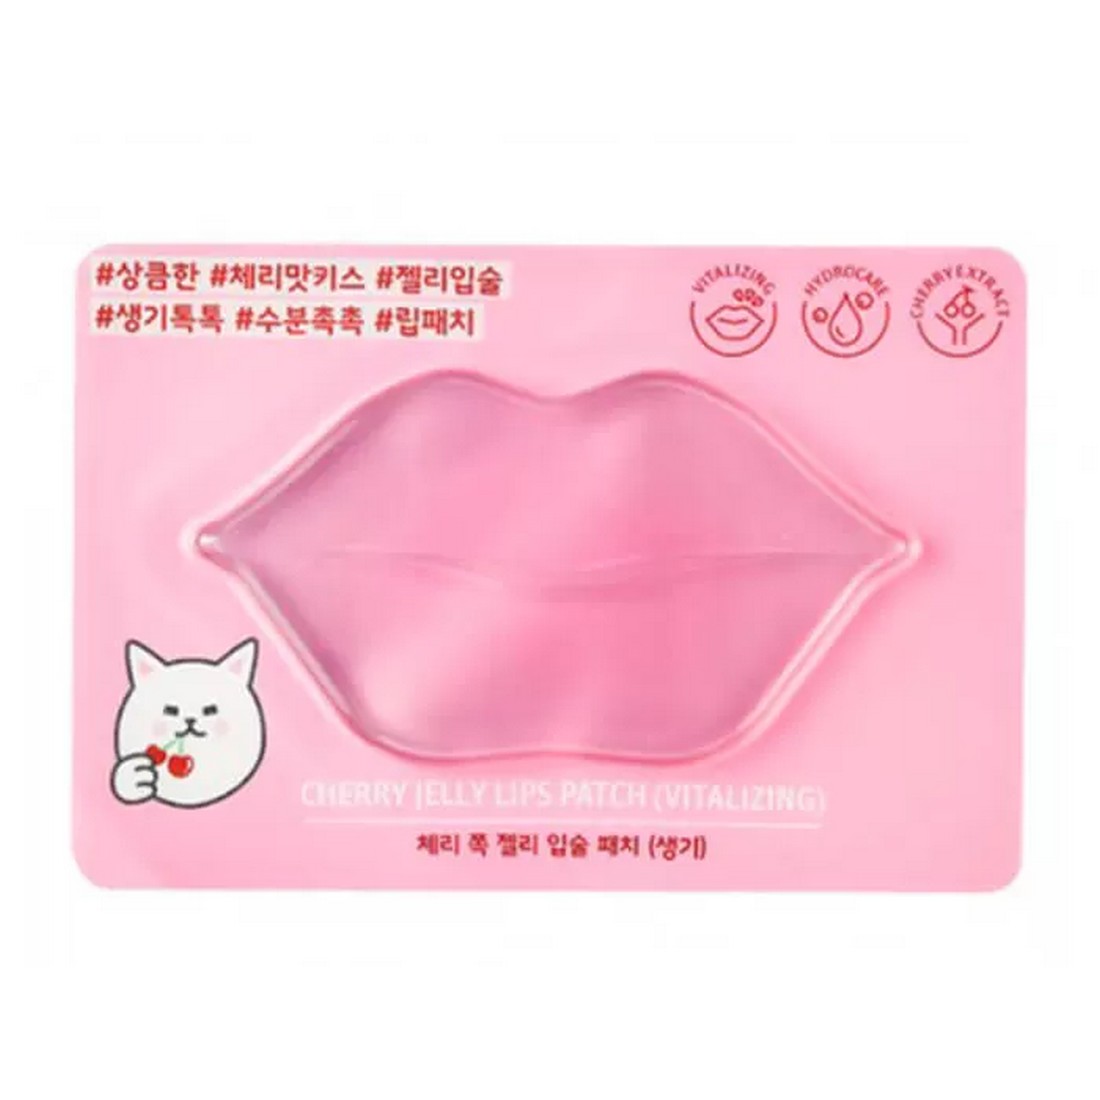 Губ маска для лица. Маска патч для губ корейская. Гидрогелевая маска для губ. Etude House Cherry Jelly Lips Patch (Vitalizing). Корейский гидрогелевый патч для губ.